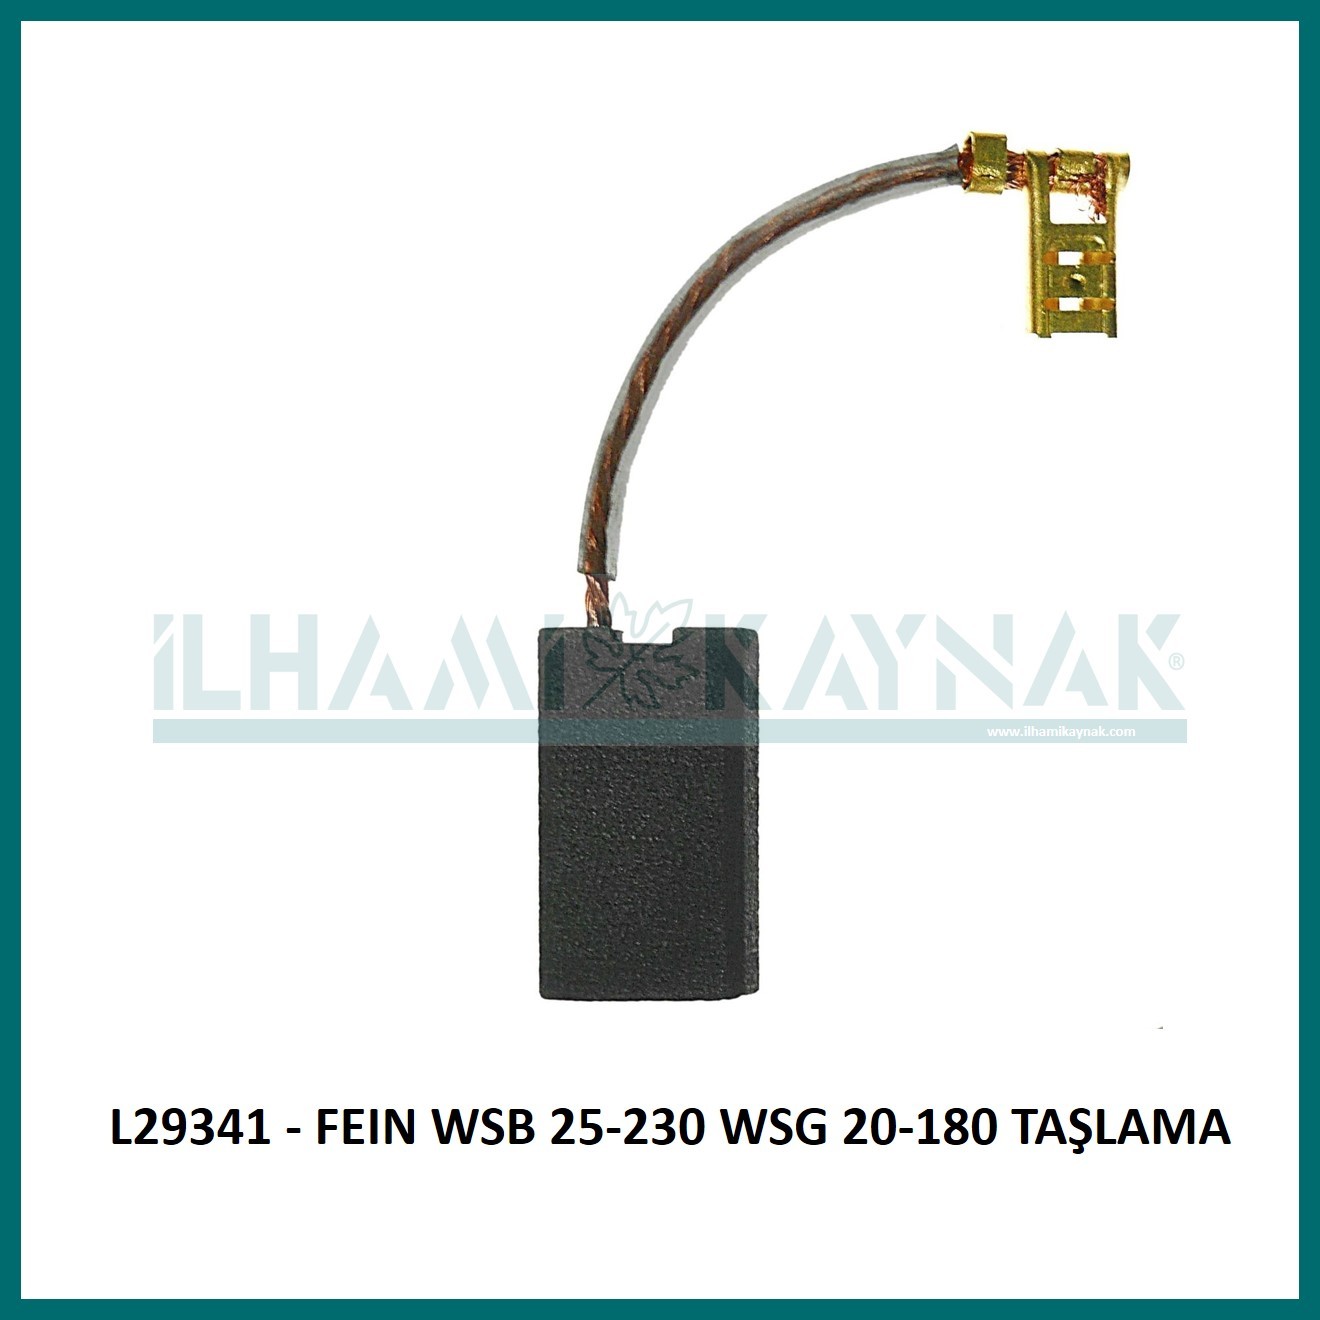 L29341 - FEIN WSB 25-230 WSG 20-180 TAŞLAMA - 8x12.5x23  mm - 100 Adet